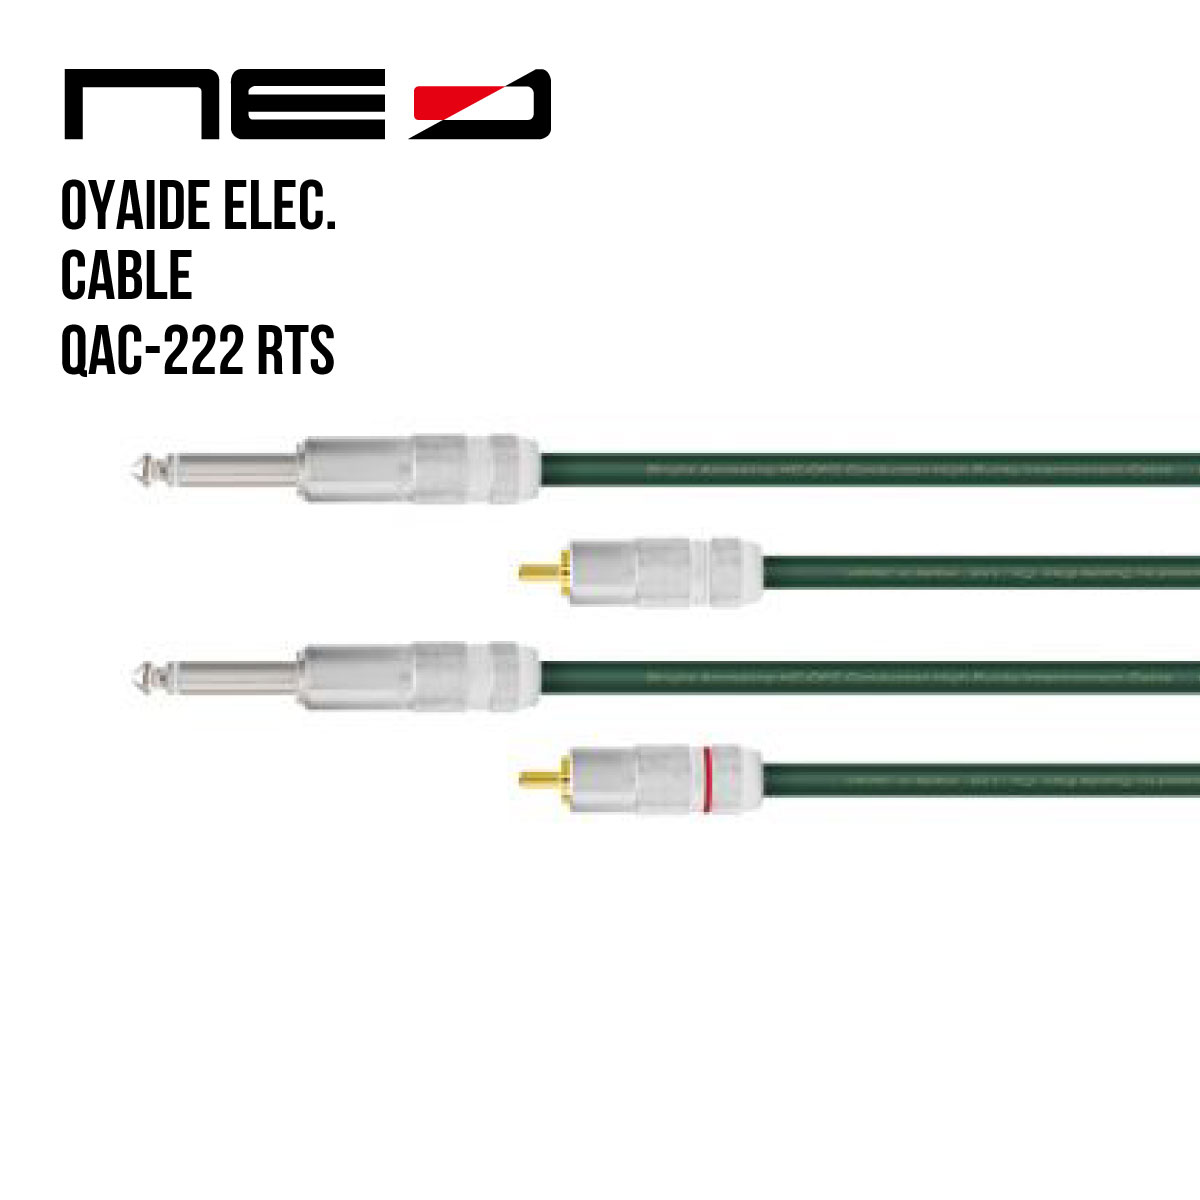 オヤイデ電気 NEOケーブル QAC-222 RTS/3.0 (RCA-TS 3m) OYAIDE Line Cable